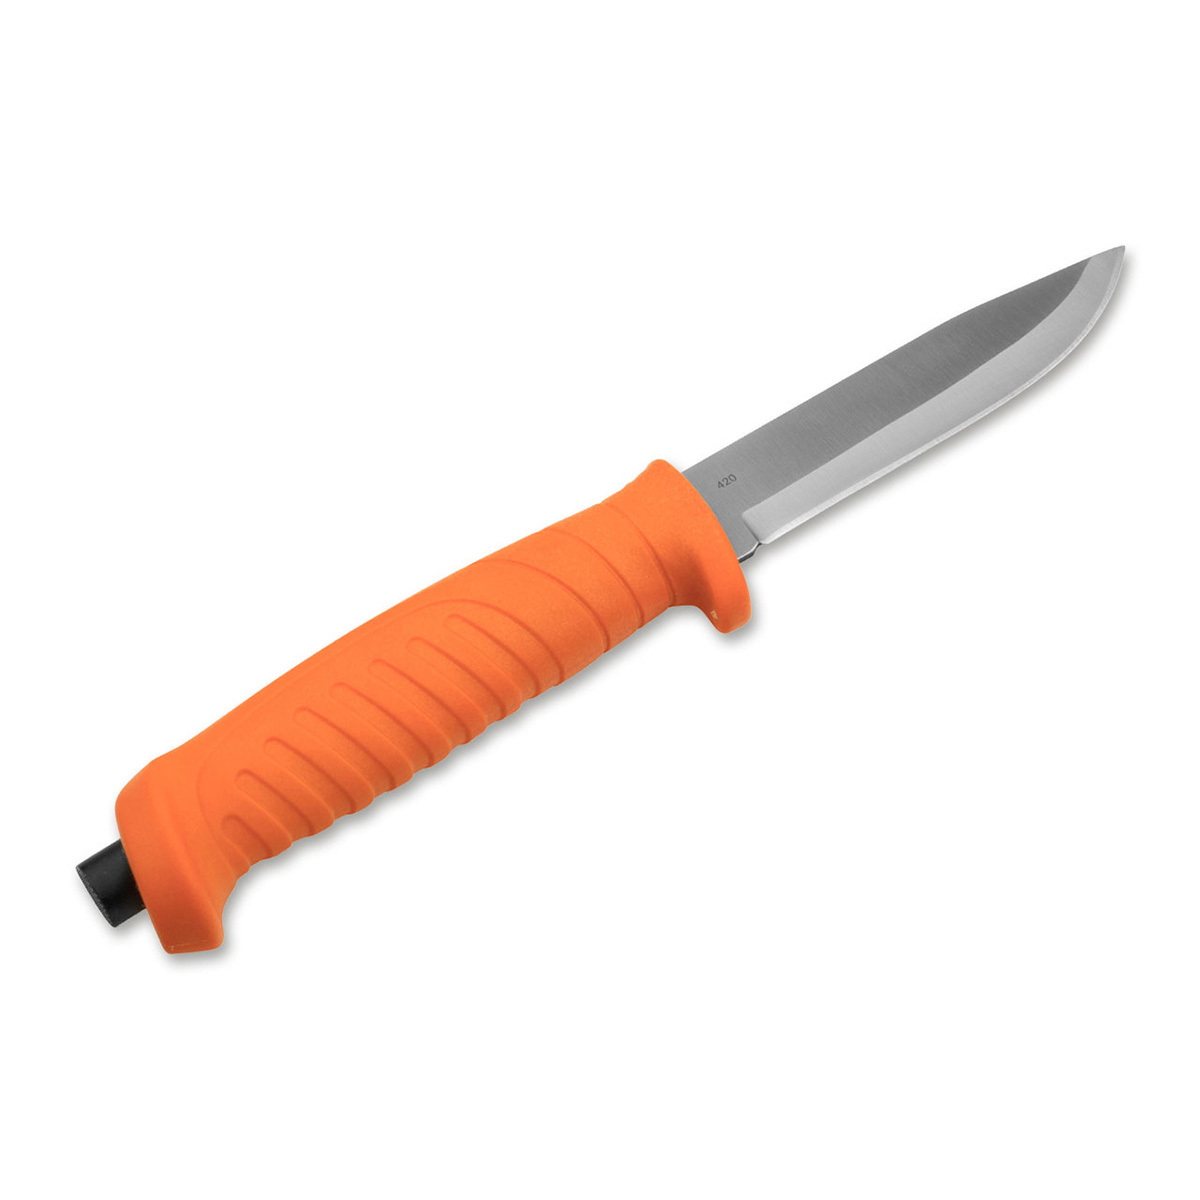 Нож с фиксированным клинком Boker Knivgar Sar Orange, сталь 420A, рукоять пластик - фото 2